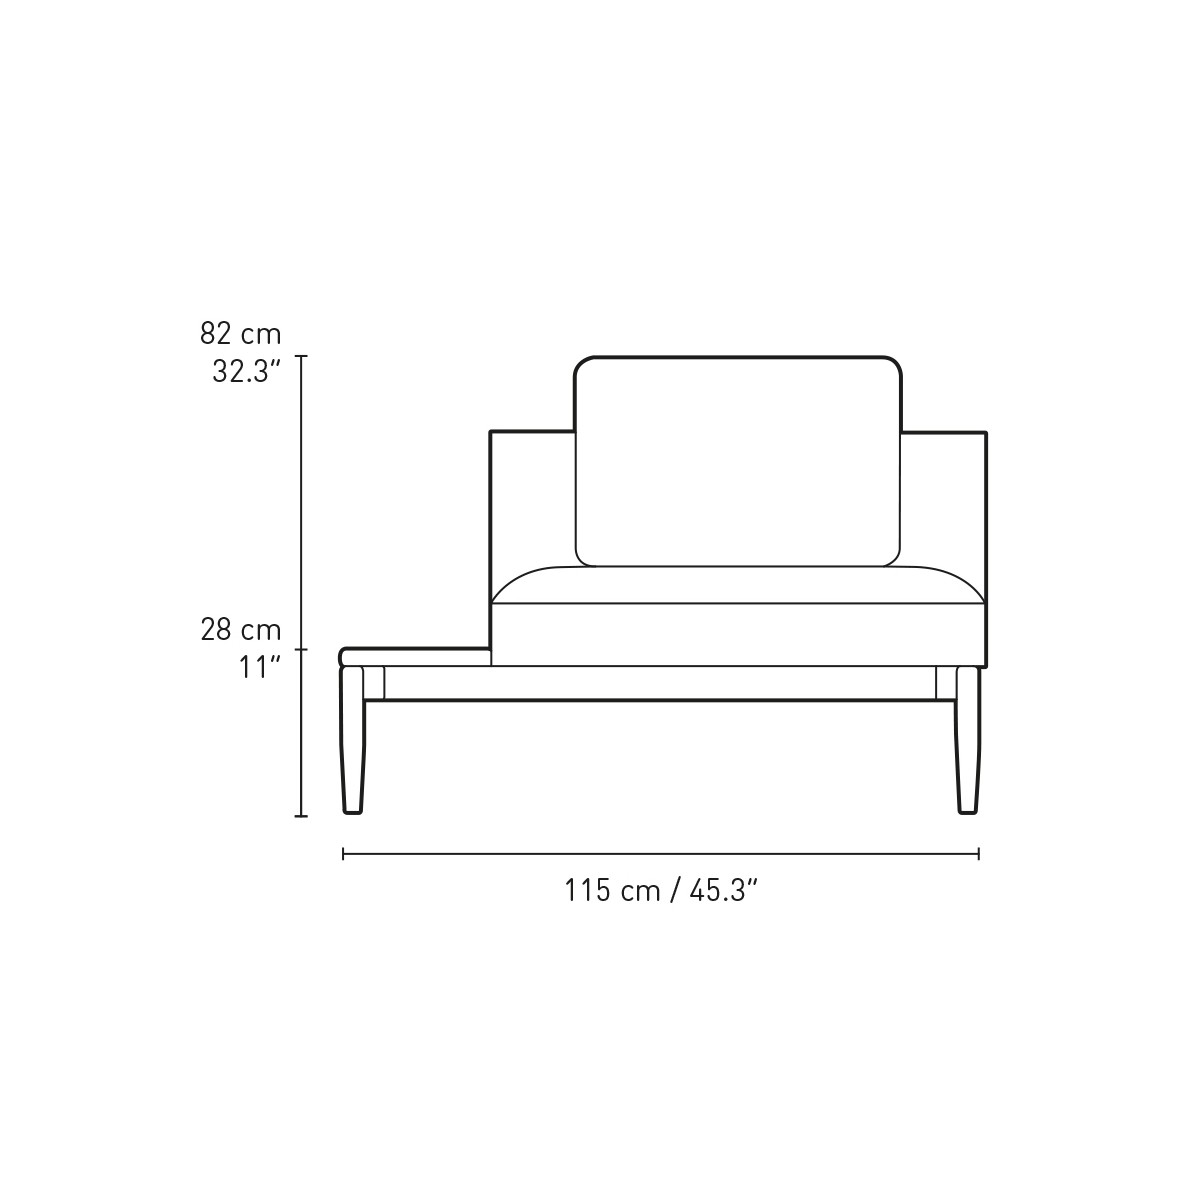 E330 left tray - 1 cushion included - Embrace sofa